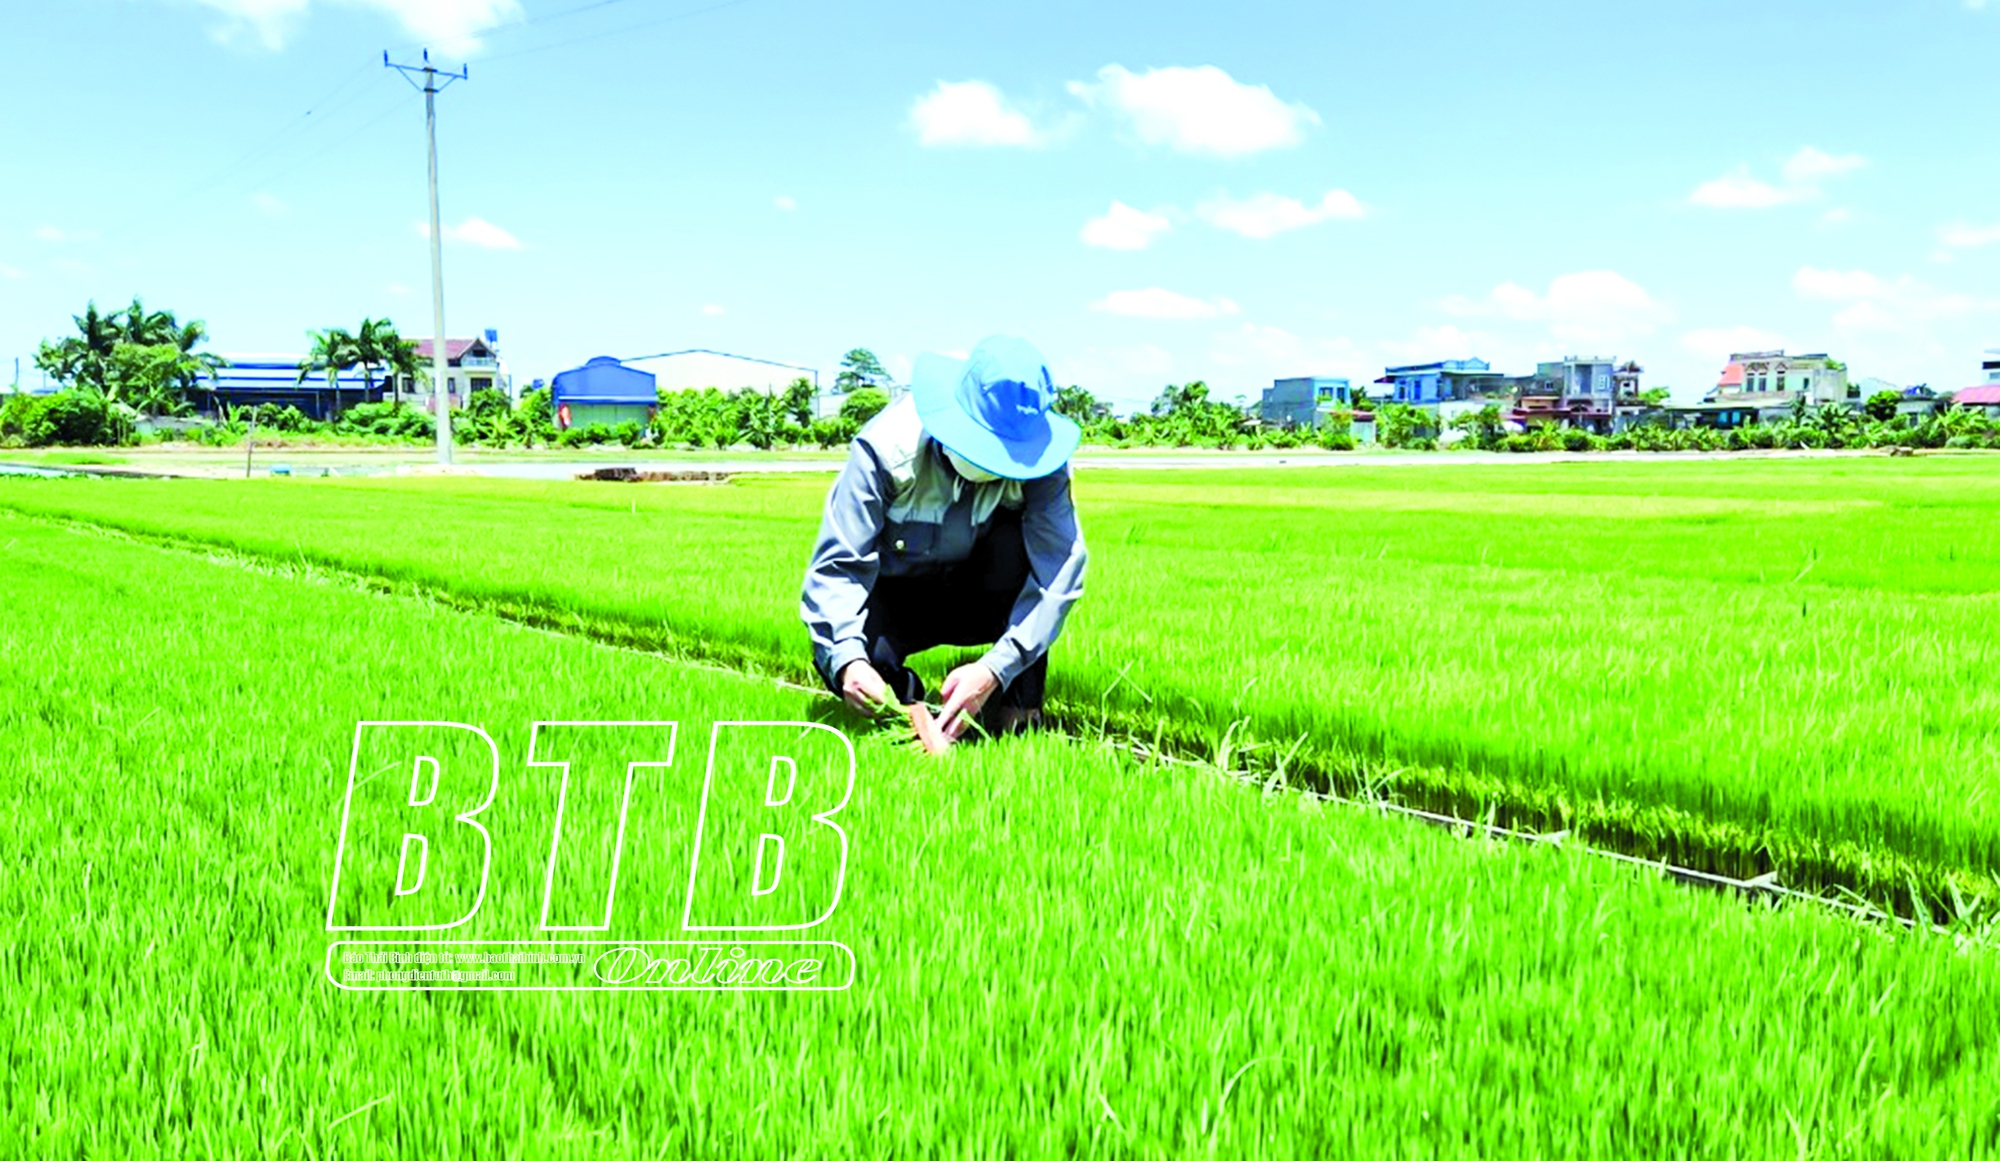 Ở một xã của tỉnh Thái Bình, 20 máy cấy cùng tiến công ra đồng, ào một cái xong hàng chục hecta lúa - Ảnh 2.